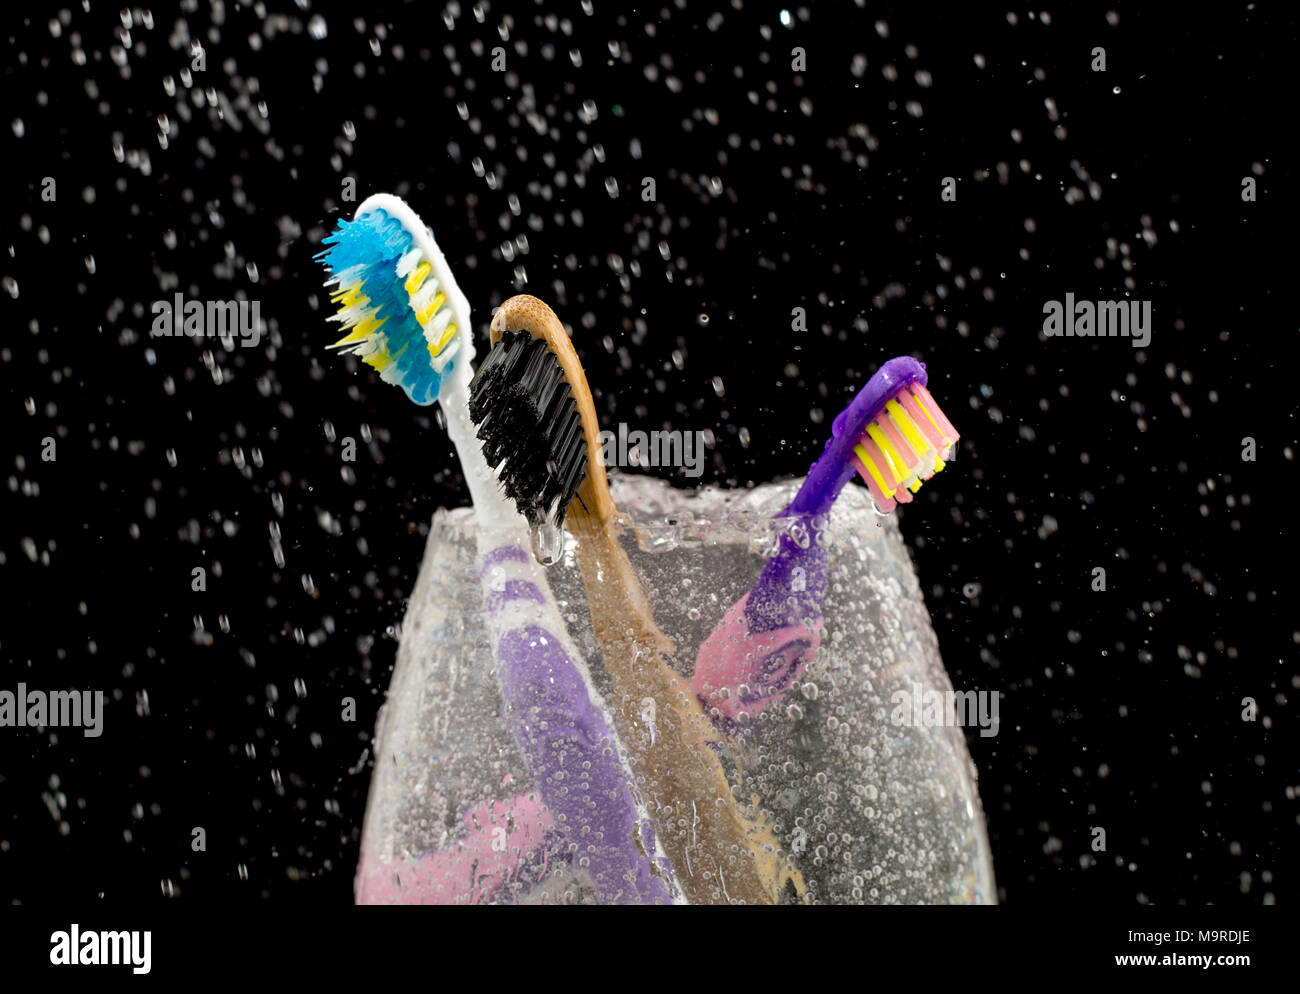 Drei Zahnbürste in ein Glas mit Wasser gefüllt auf einem schwarzen bacground. Stockfoto